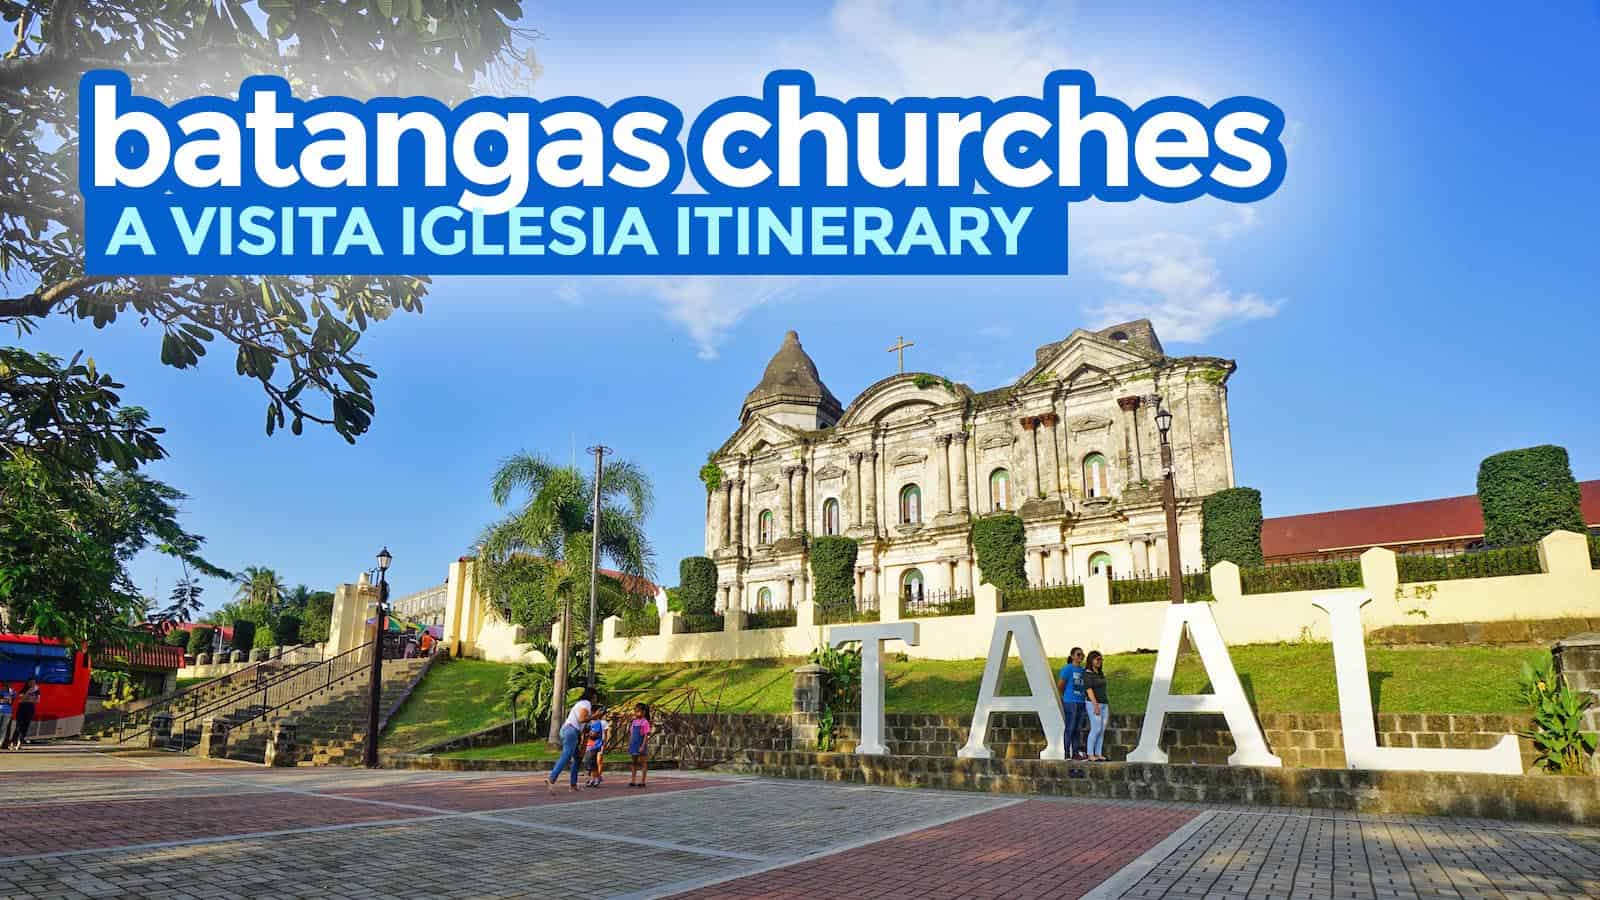 巴丹加斯的7座教堂:游览伊格莱西亚的旅行路线